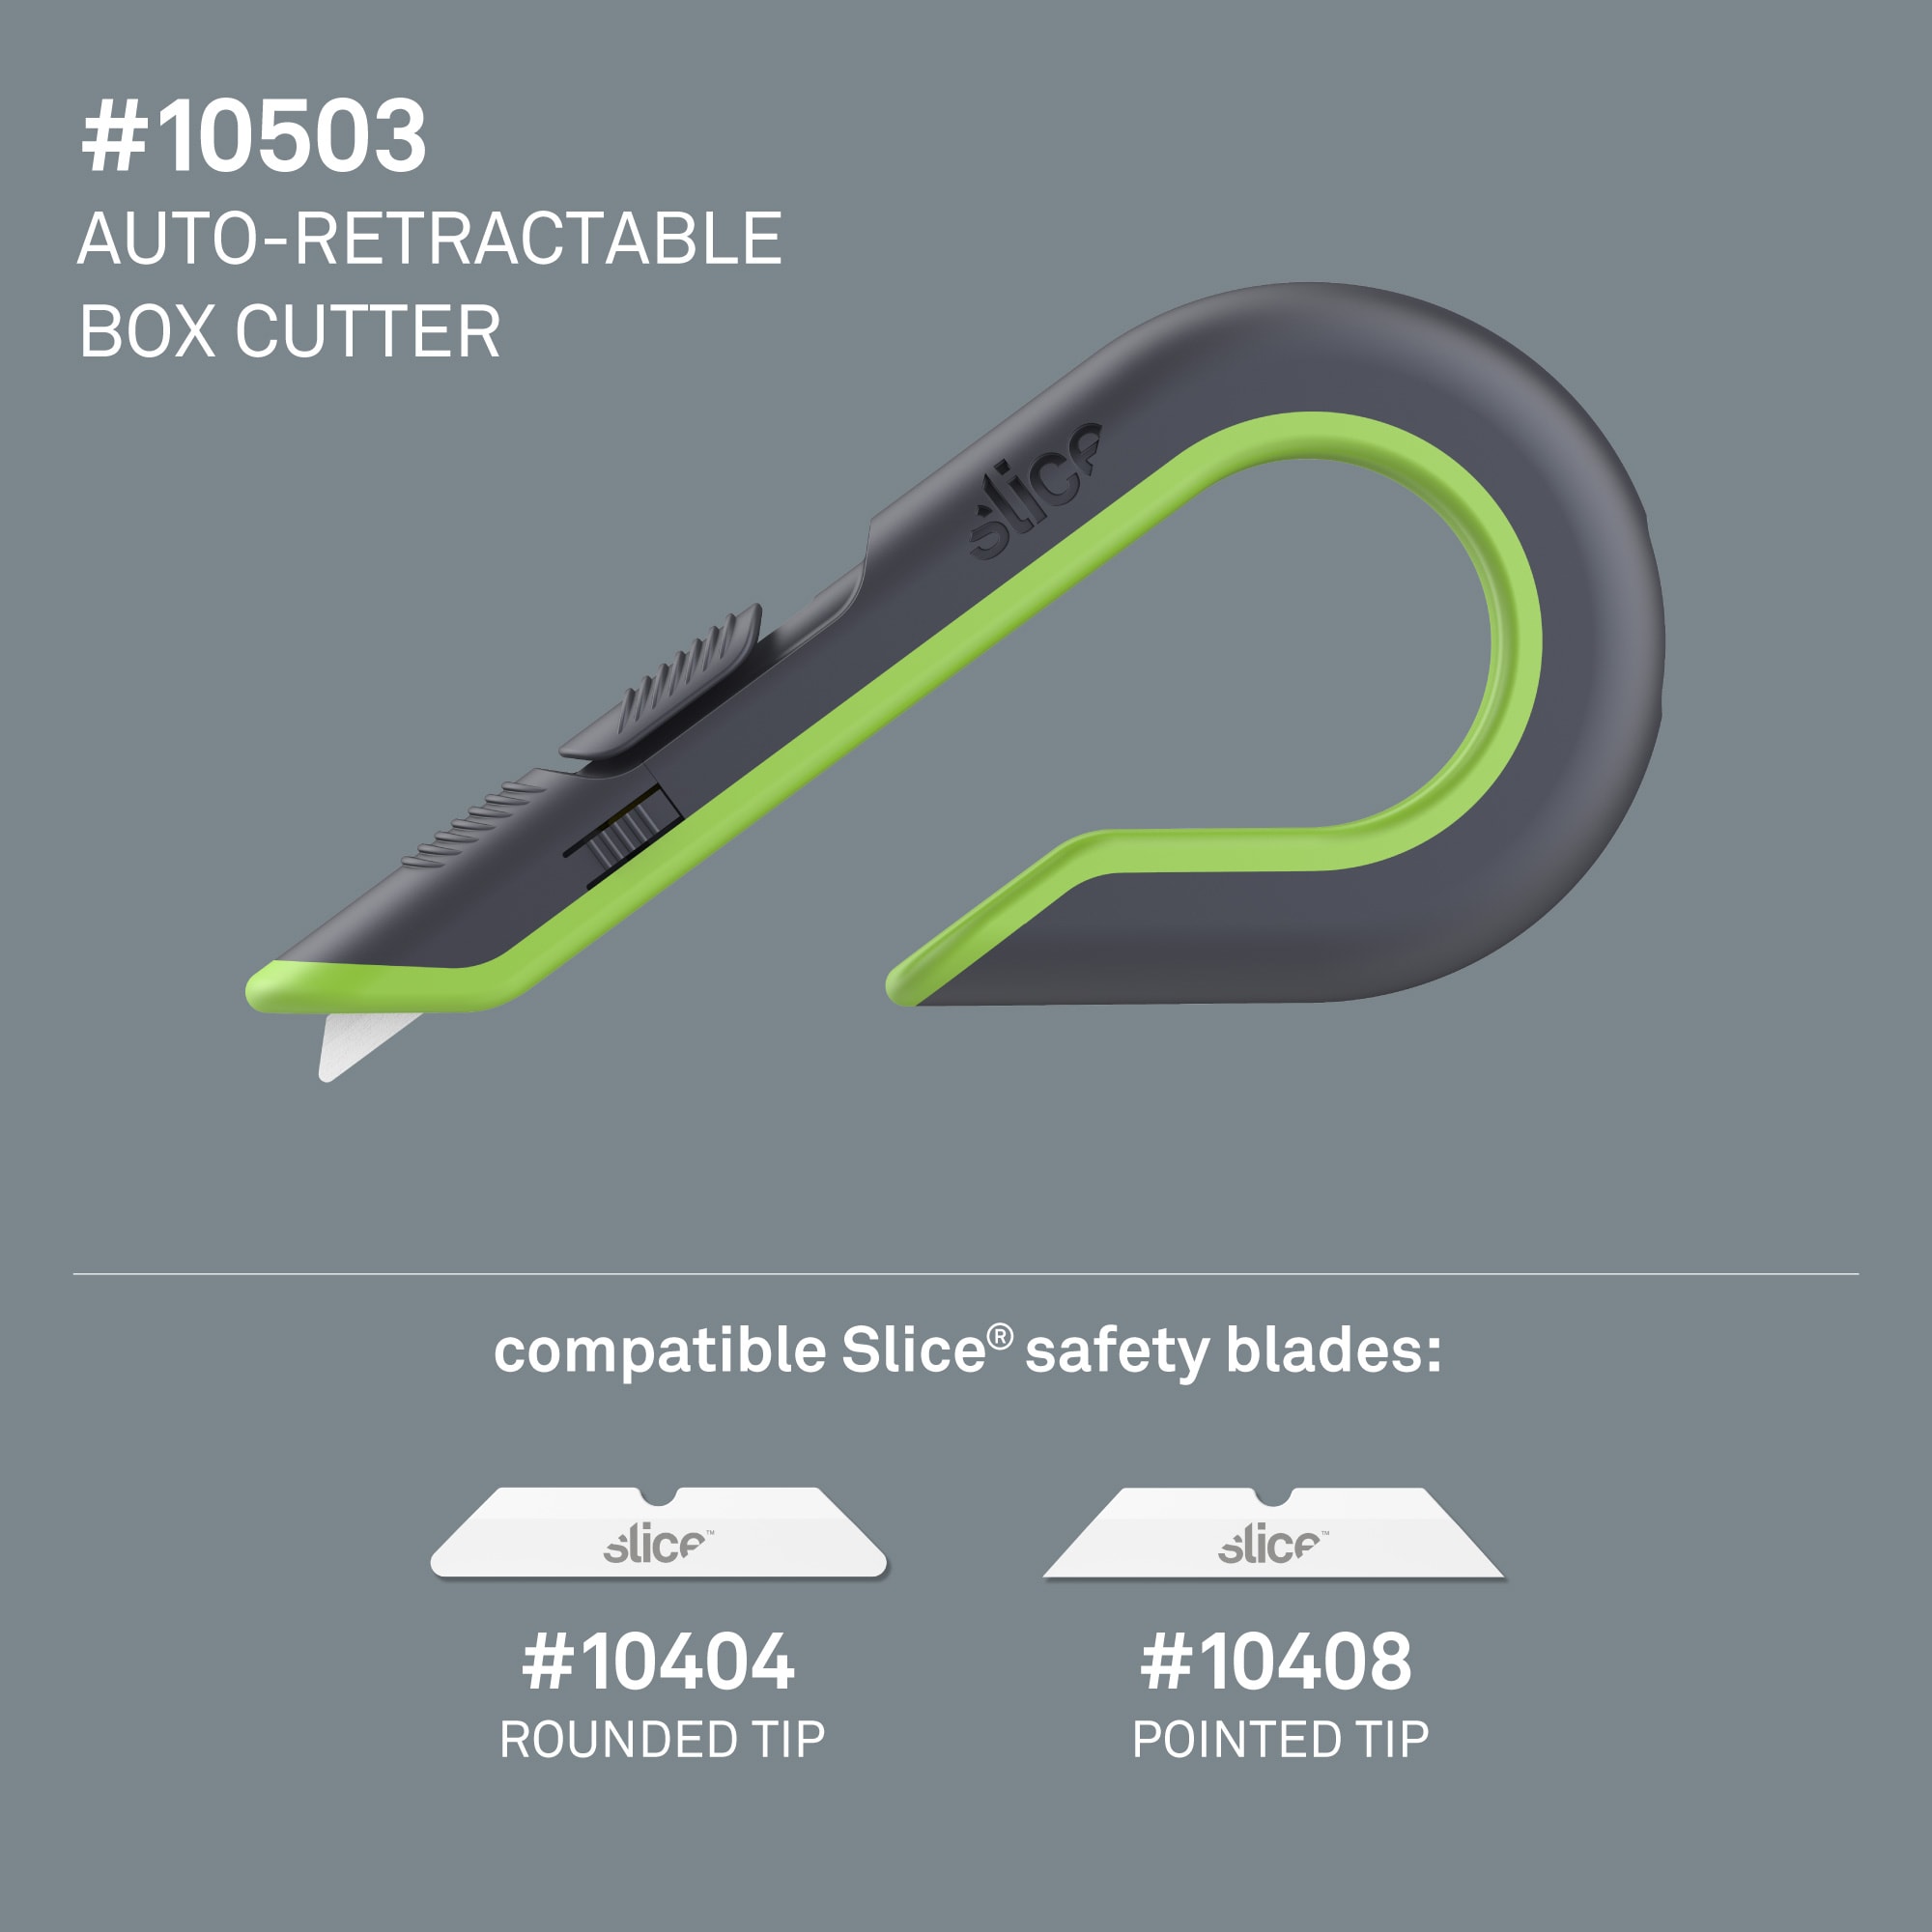 Auto-Retractable Box Cutter, Slice®